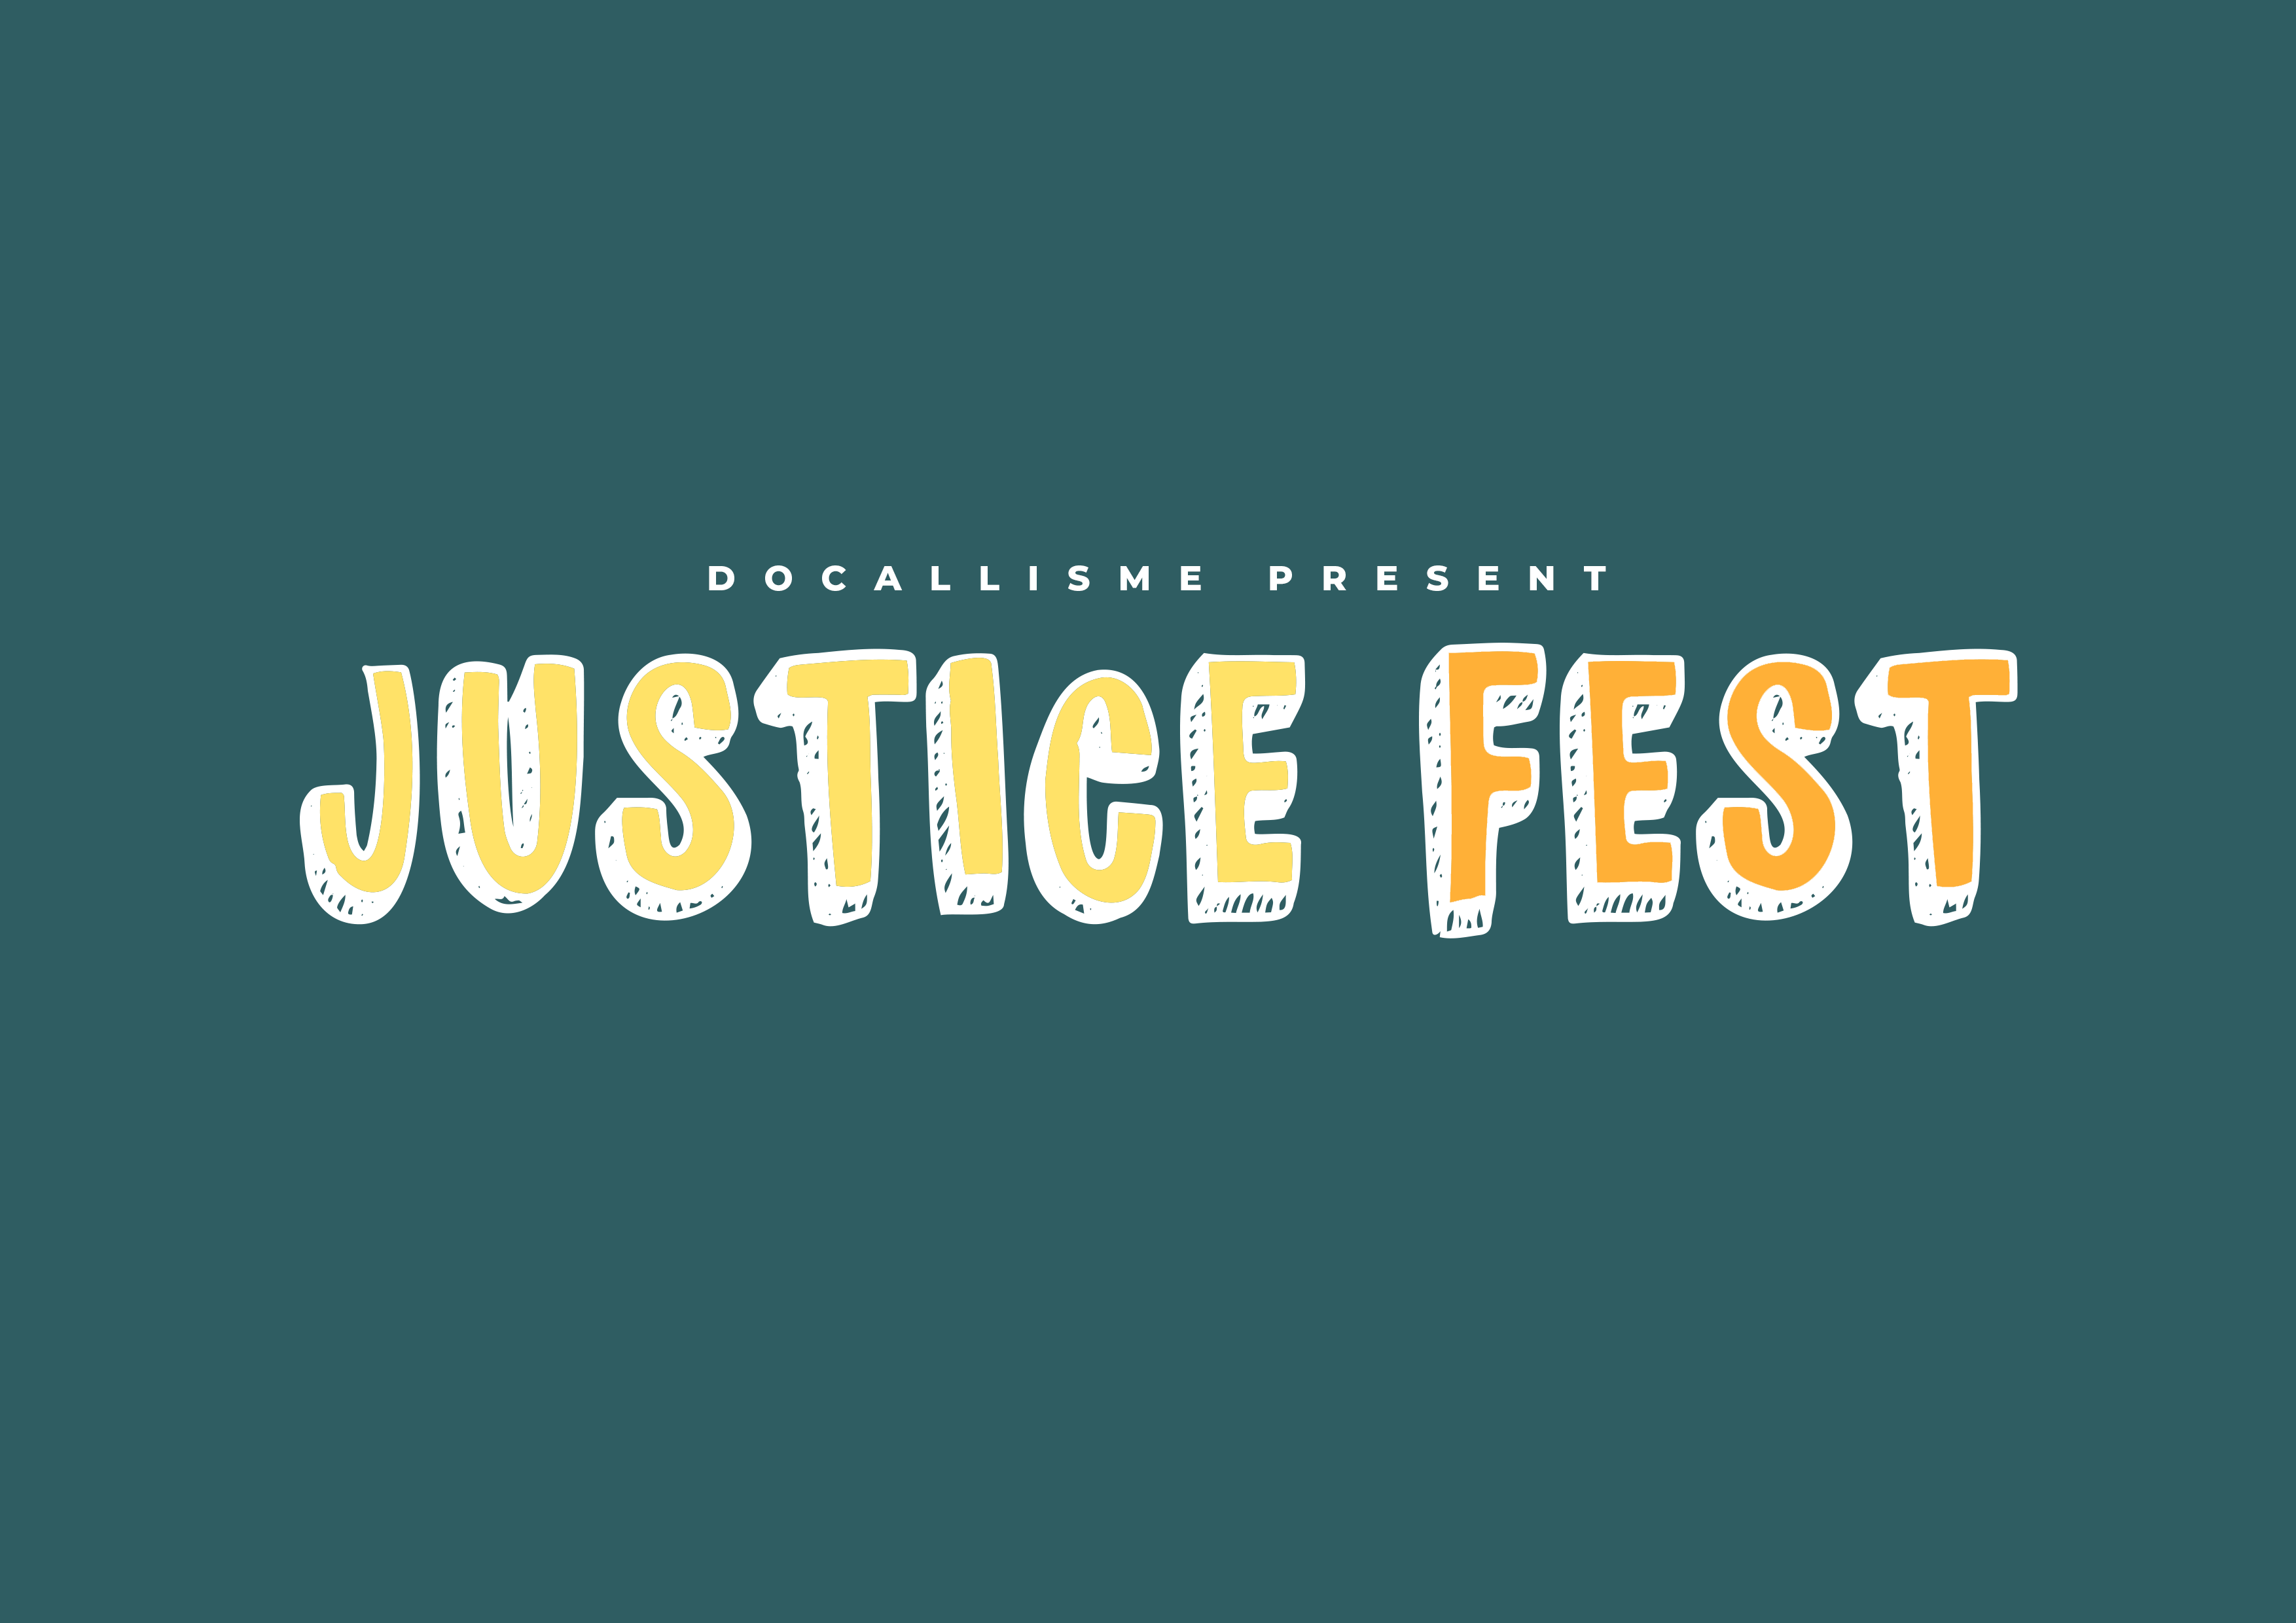 Justice Fest sample image